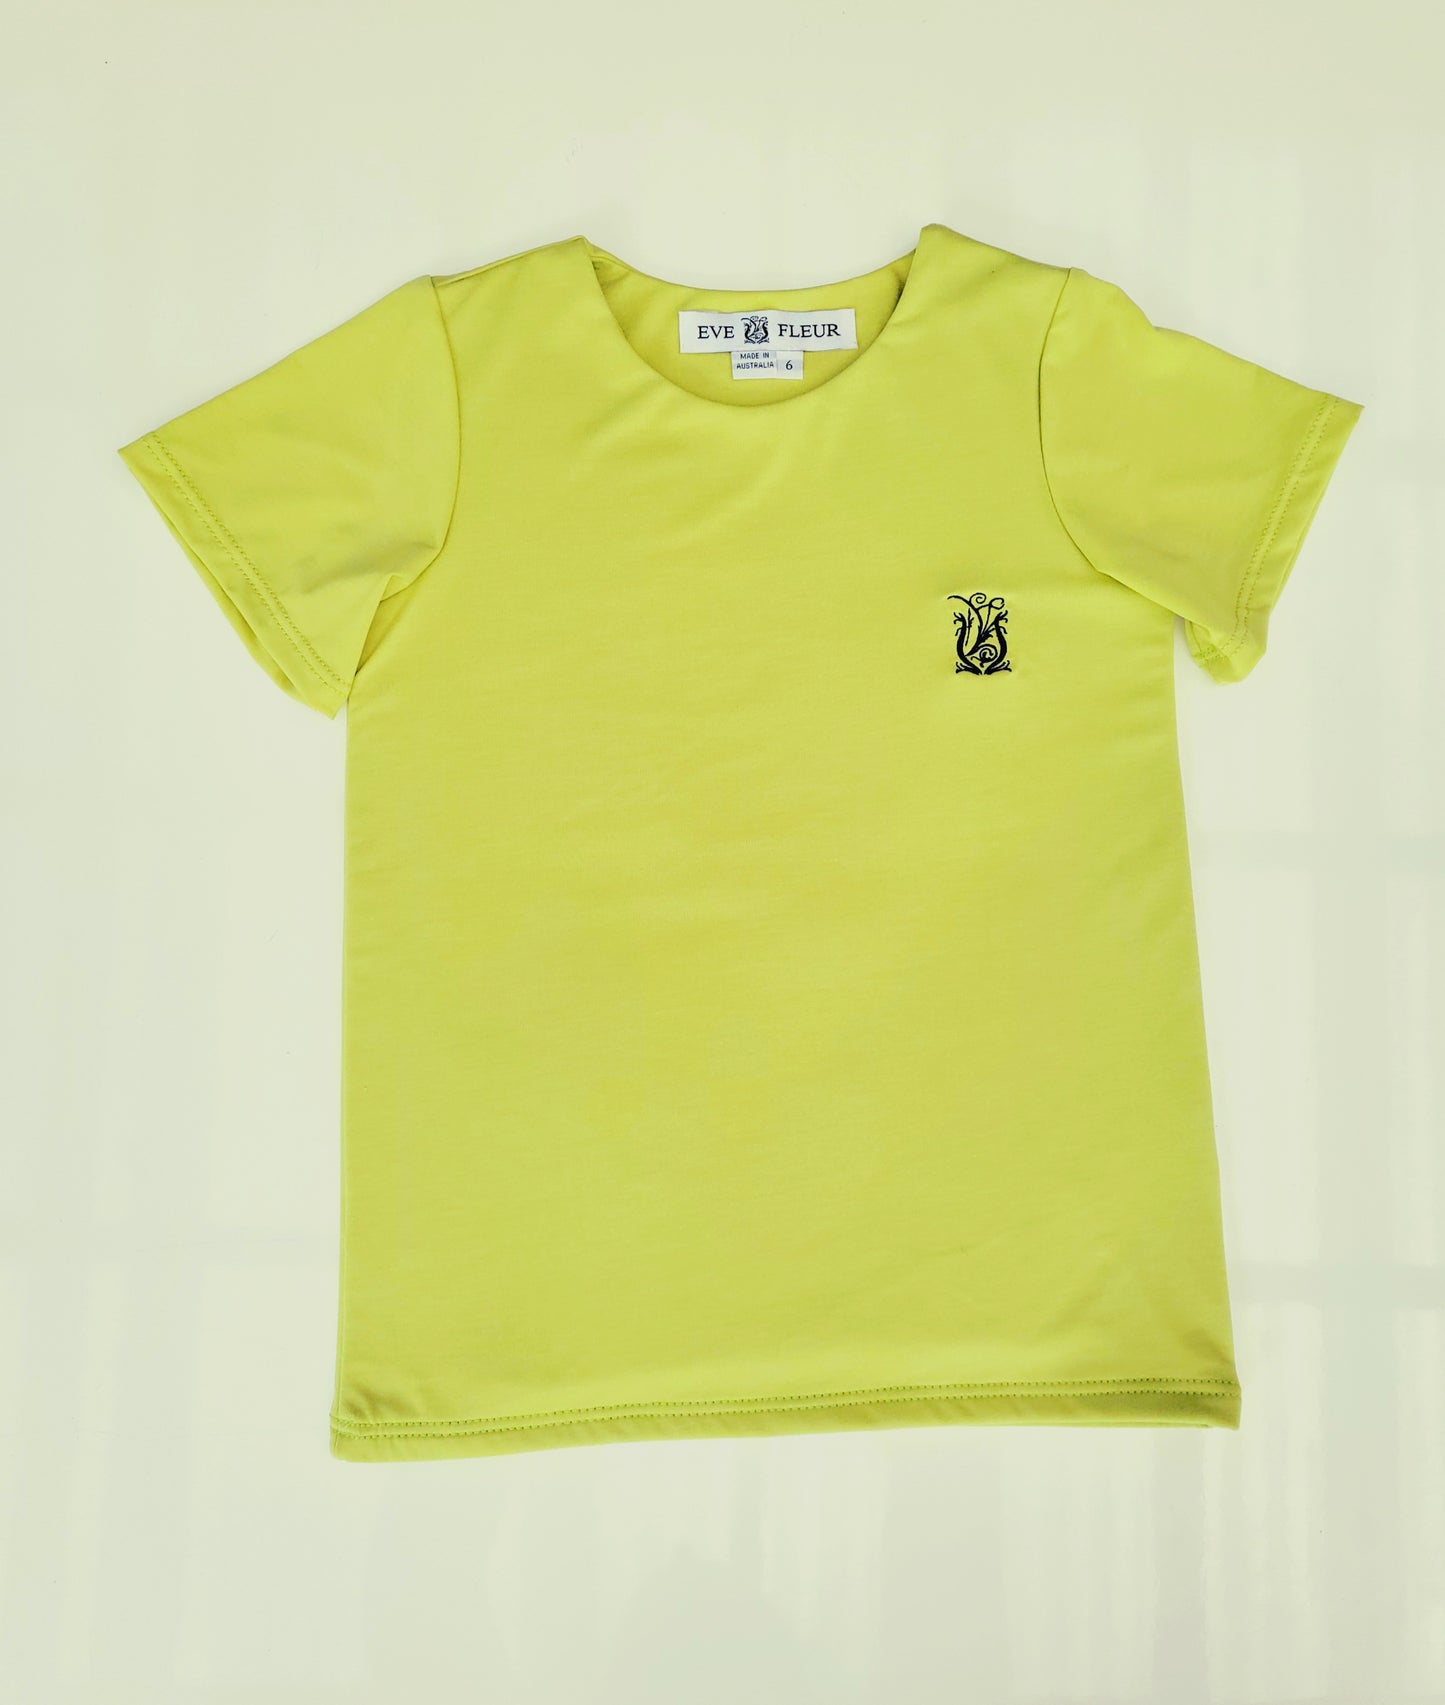 Eve Fleur - EMF Shielding Kids Tee Shirt - Lime - Schild